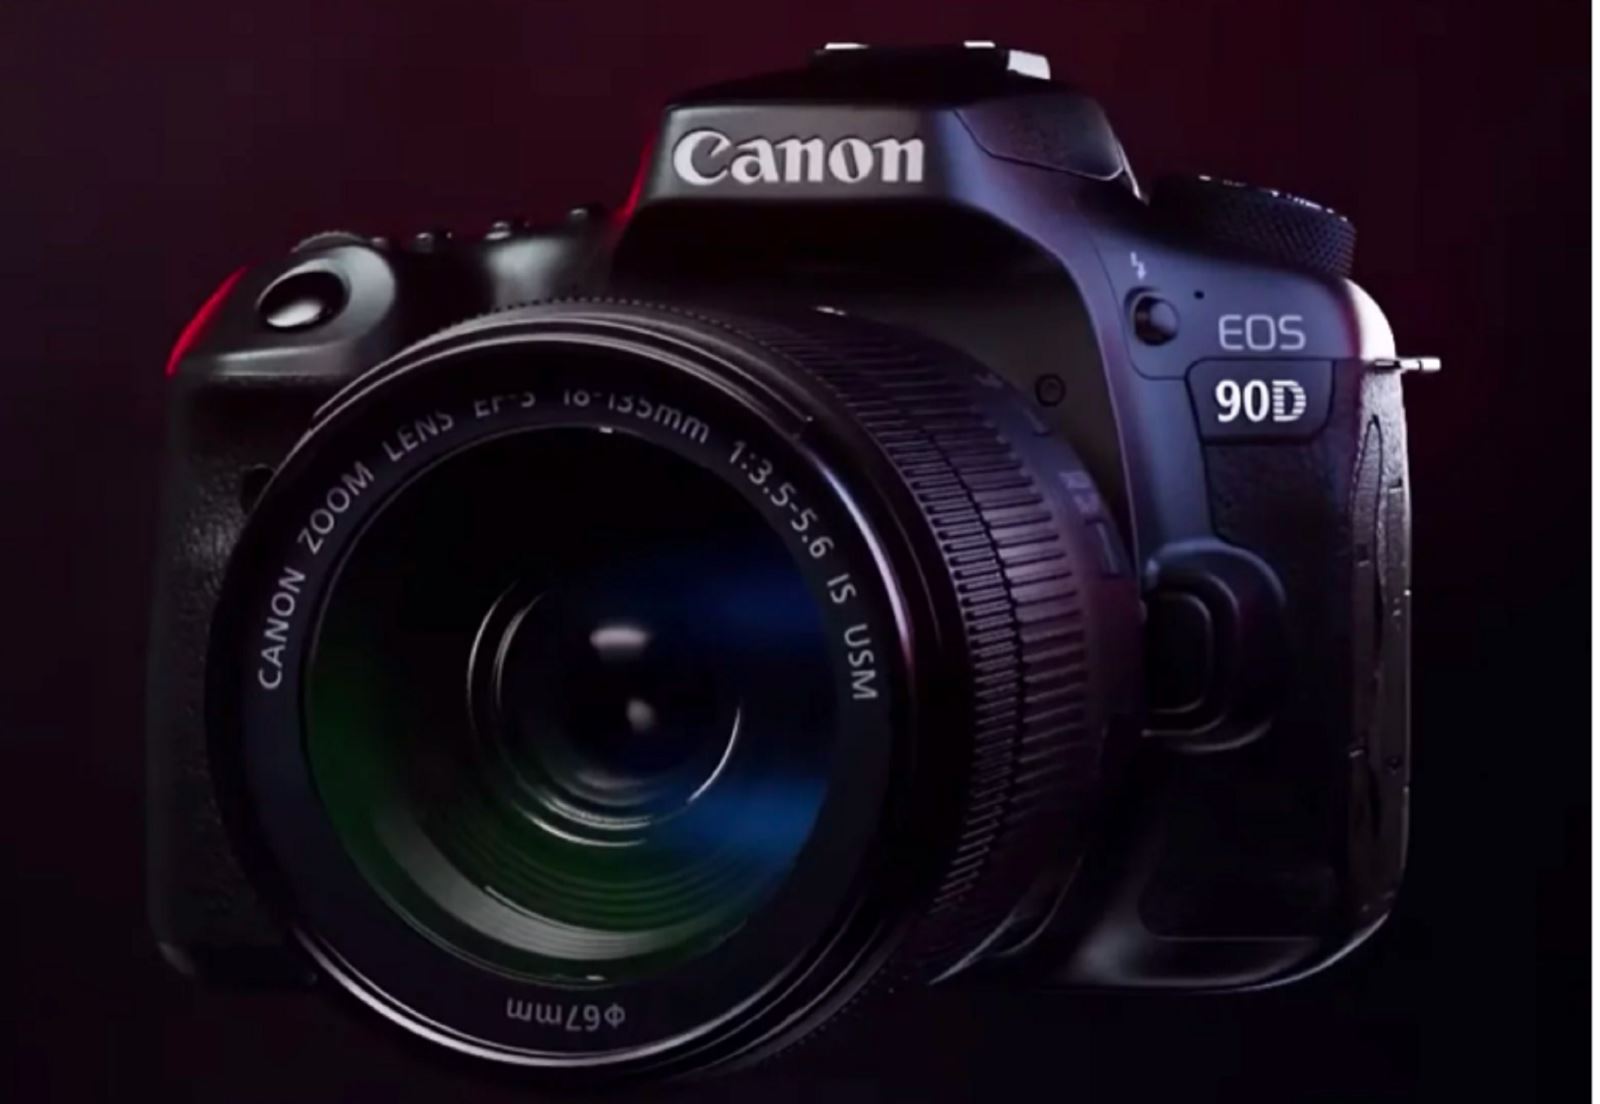 Rò rỉ video giới thiệu hai máy ảnh Canon EOS M6 Mark II và Canon EOS 90D trước khi ra mắt